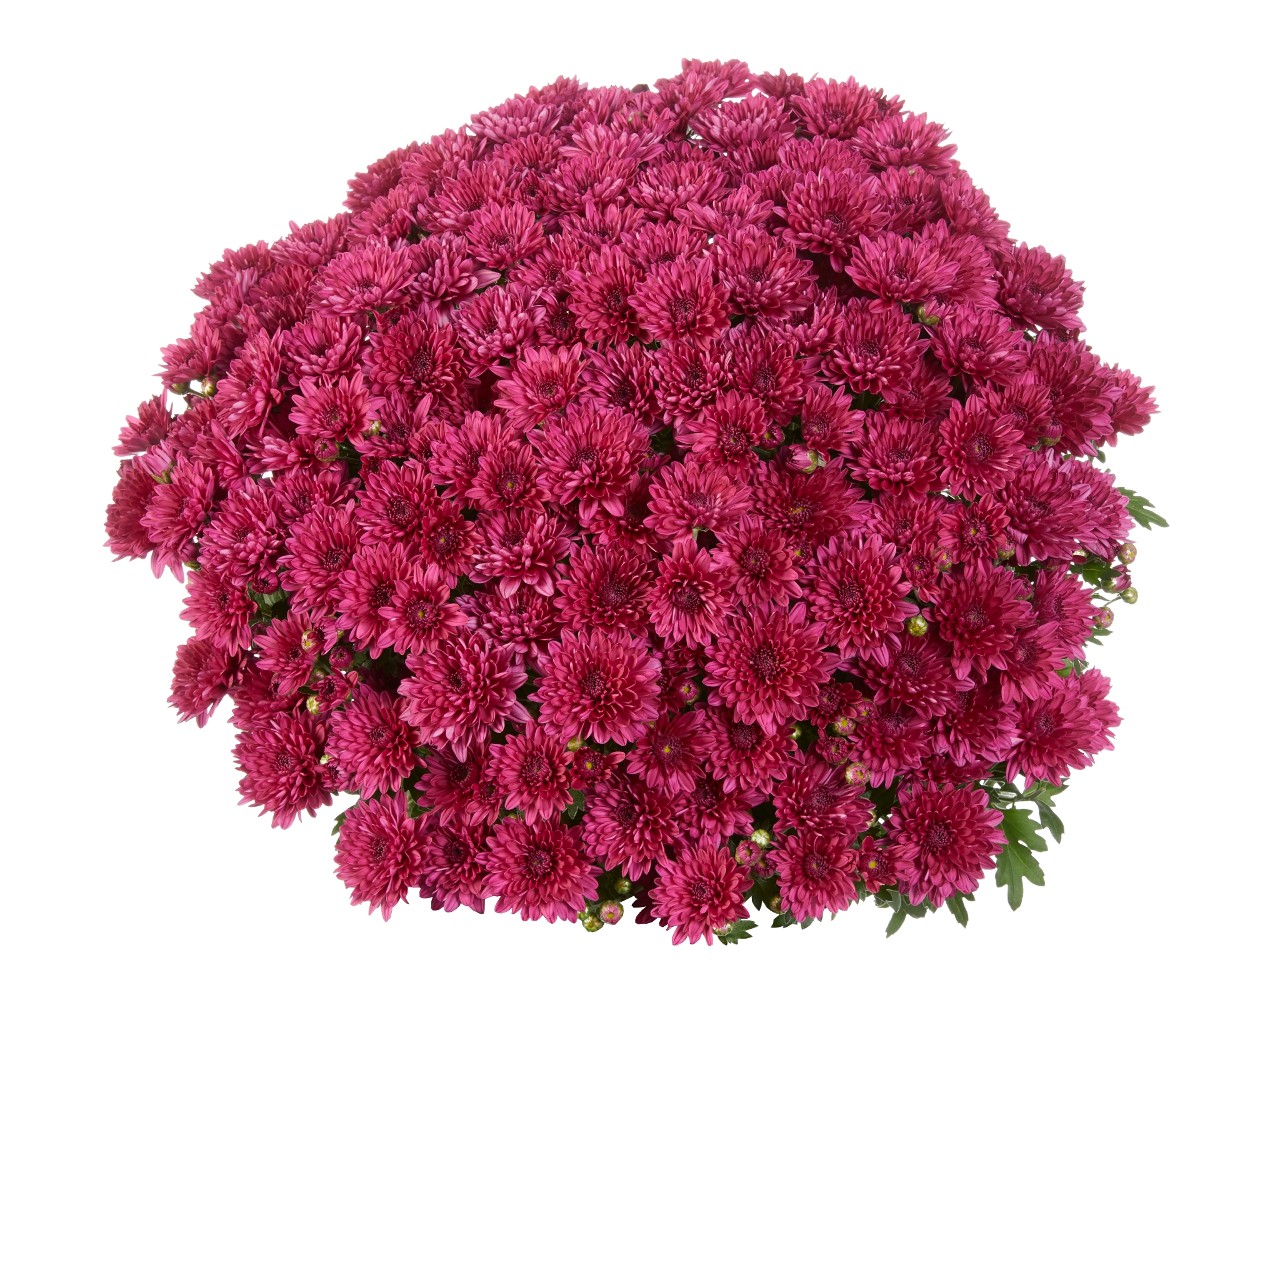 Mum chrysanthemum x morifolium 'Elated Purple'